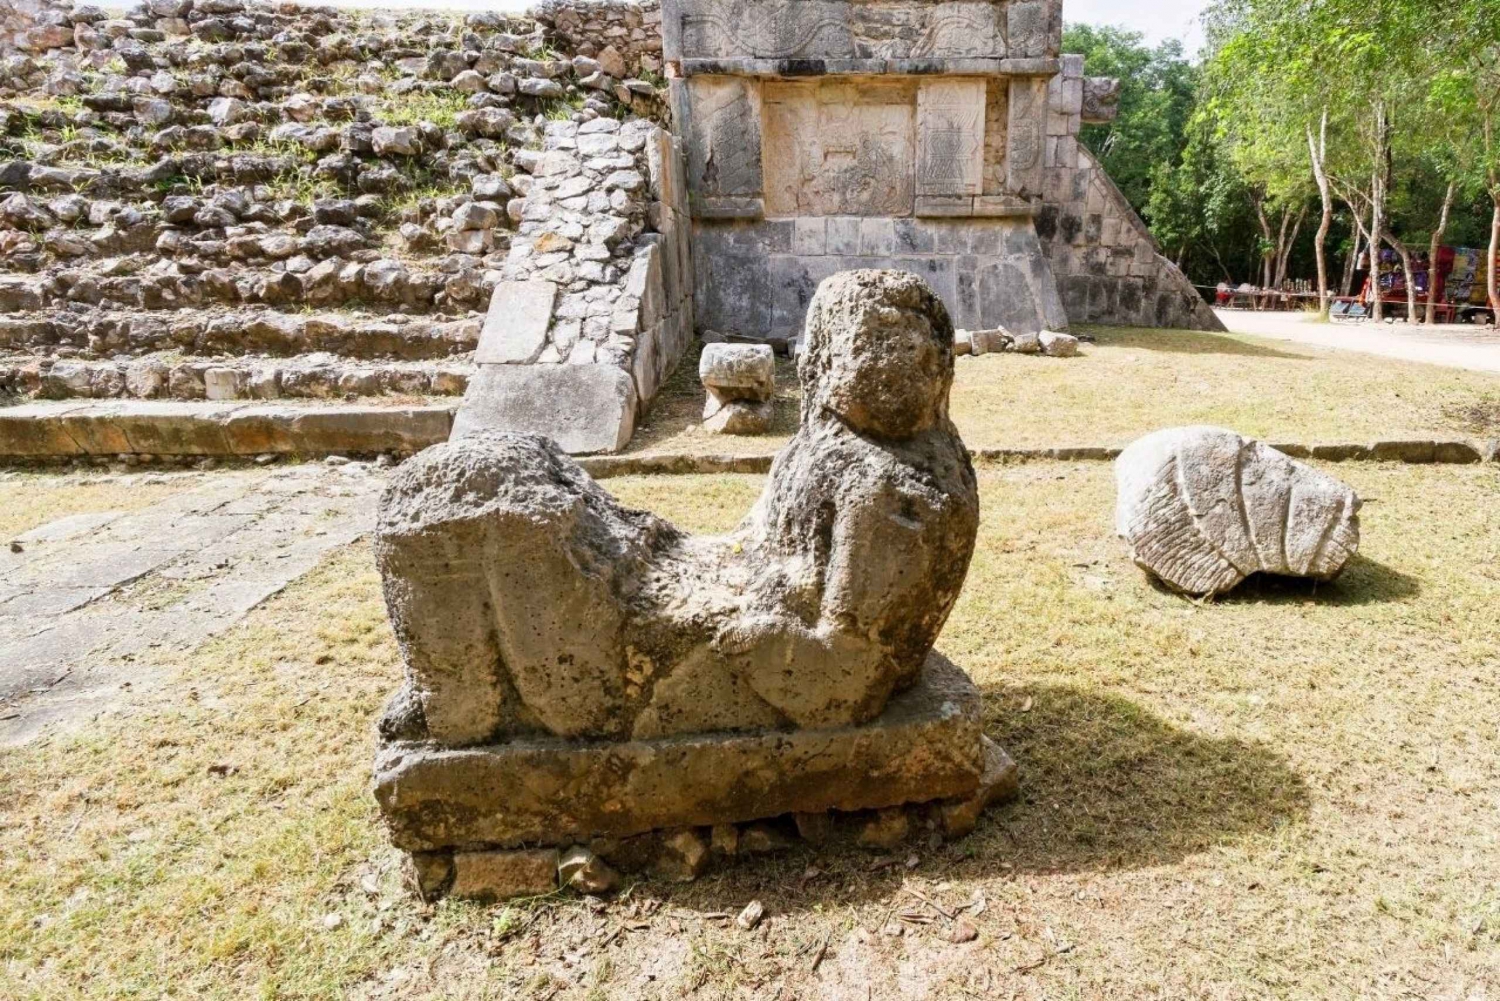 From Merida to Cancun: Chichen Itza, Valladolid & Cenote